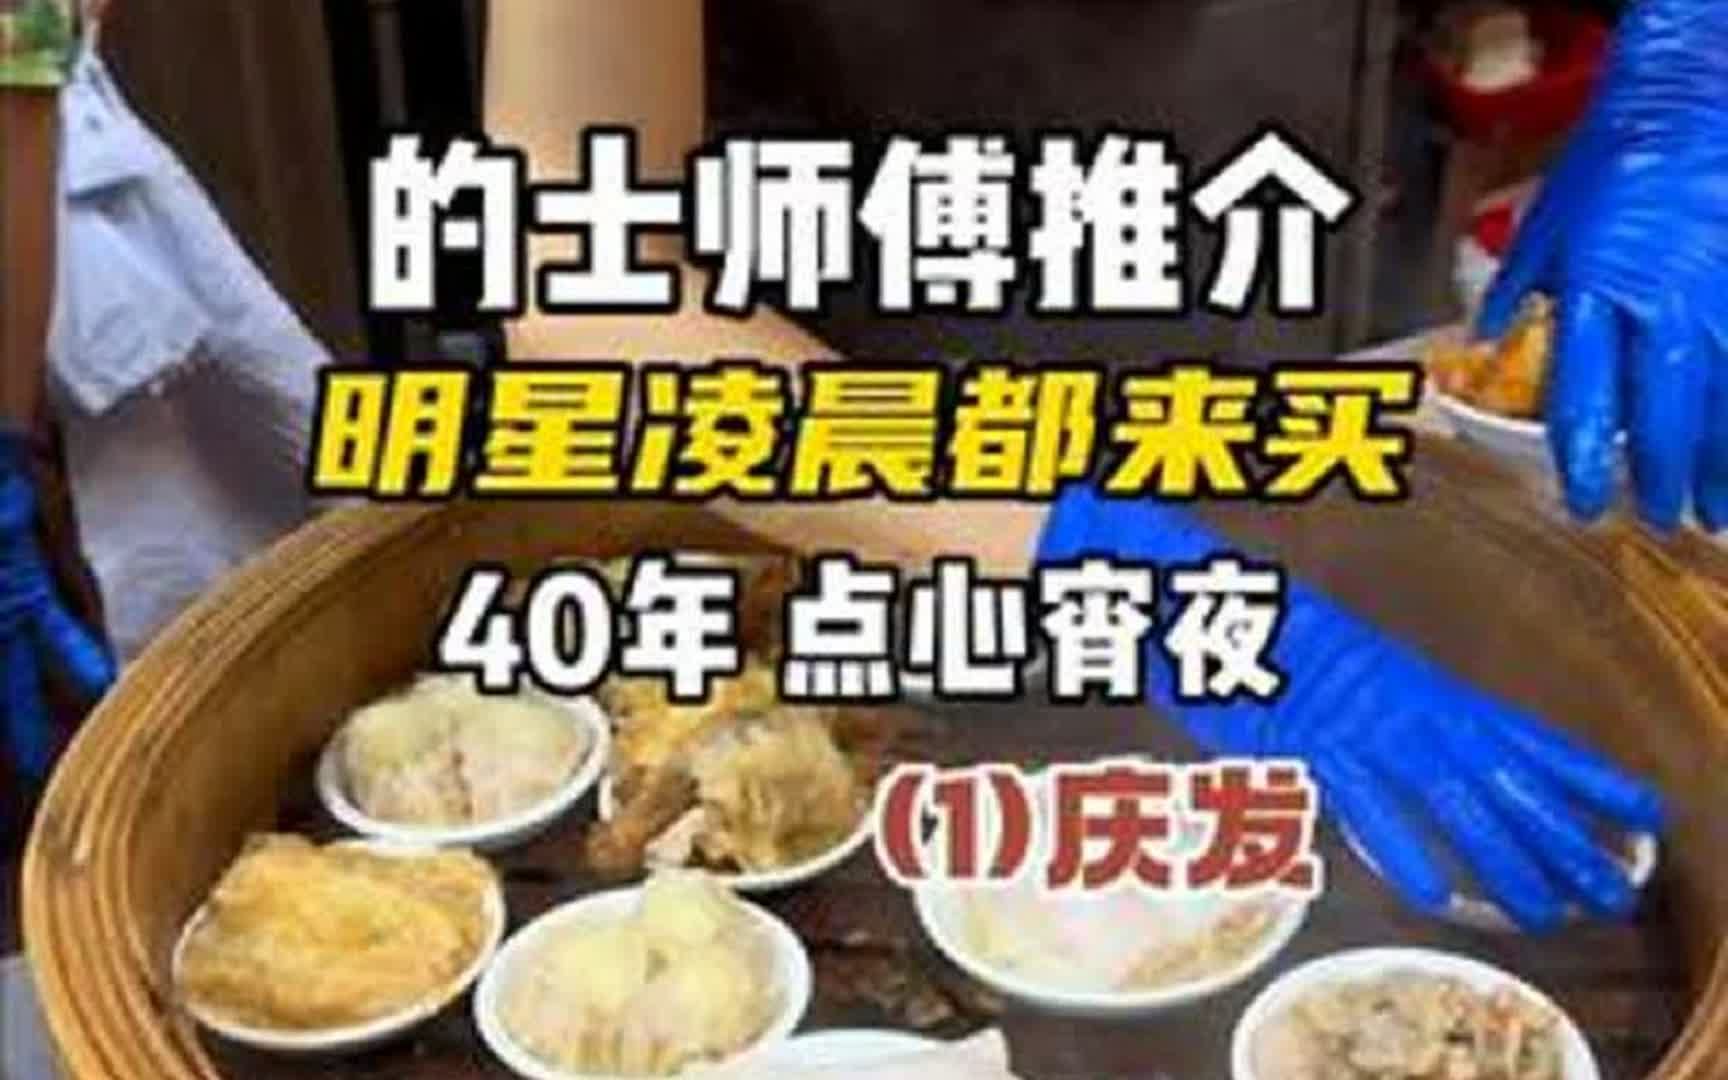 《随机抓香港的士佬推介美食》 40年历史，众多一线明星凌晨也会来买的通宵深夜点心饭店：庆发